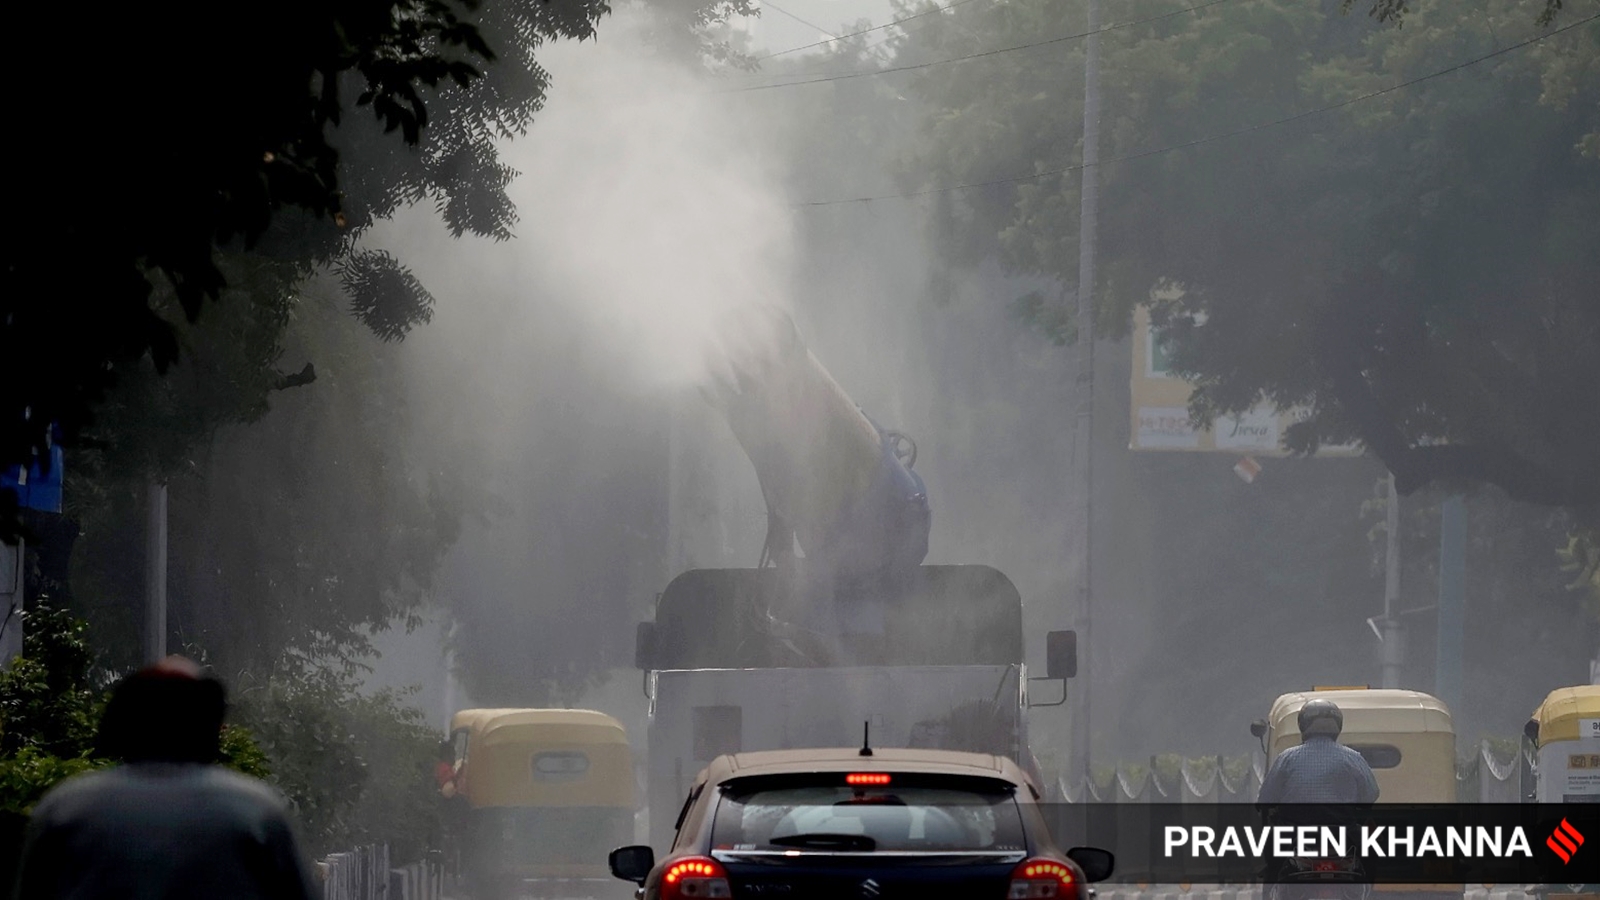 Et kjøretøy mot smog sprayer vann for å kontrollere forurensning ved ITO i New Delhi.  (Ekspressbilde av Praveen Khanna)